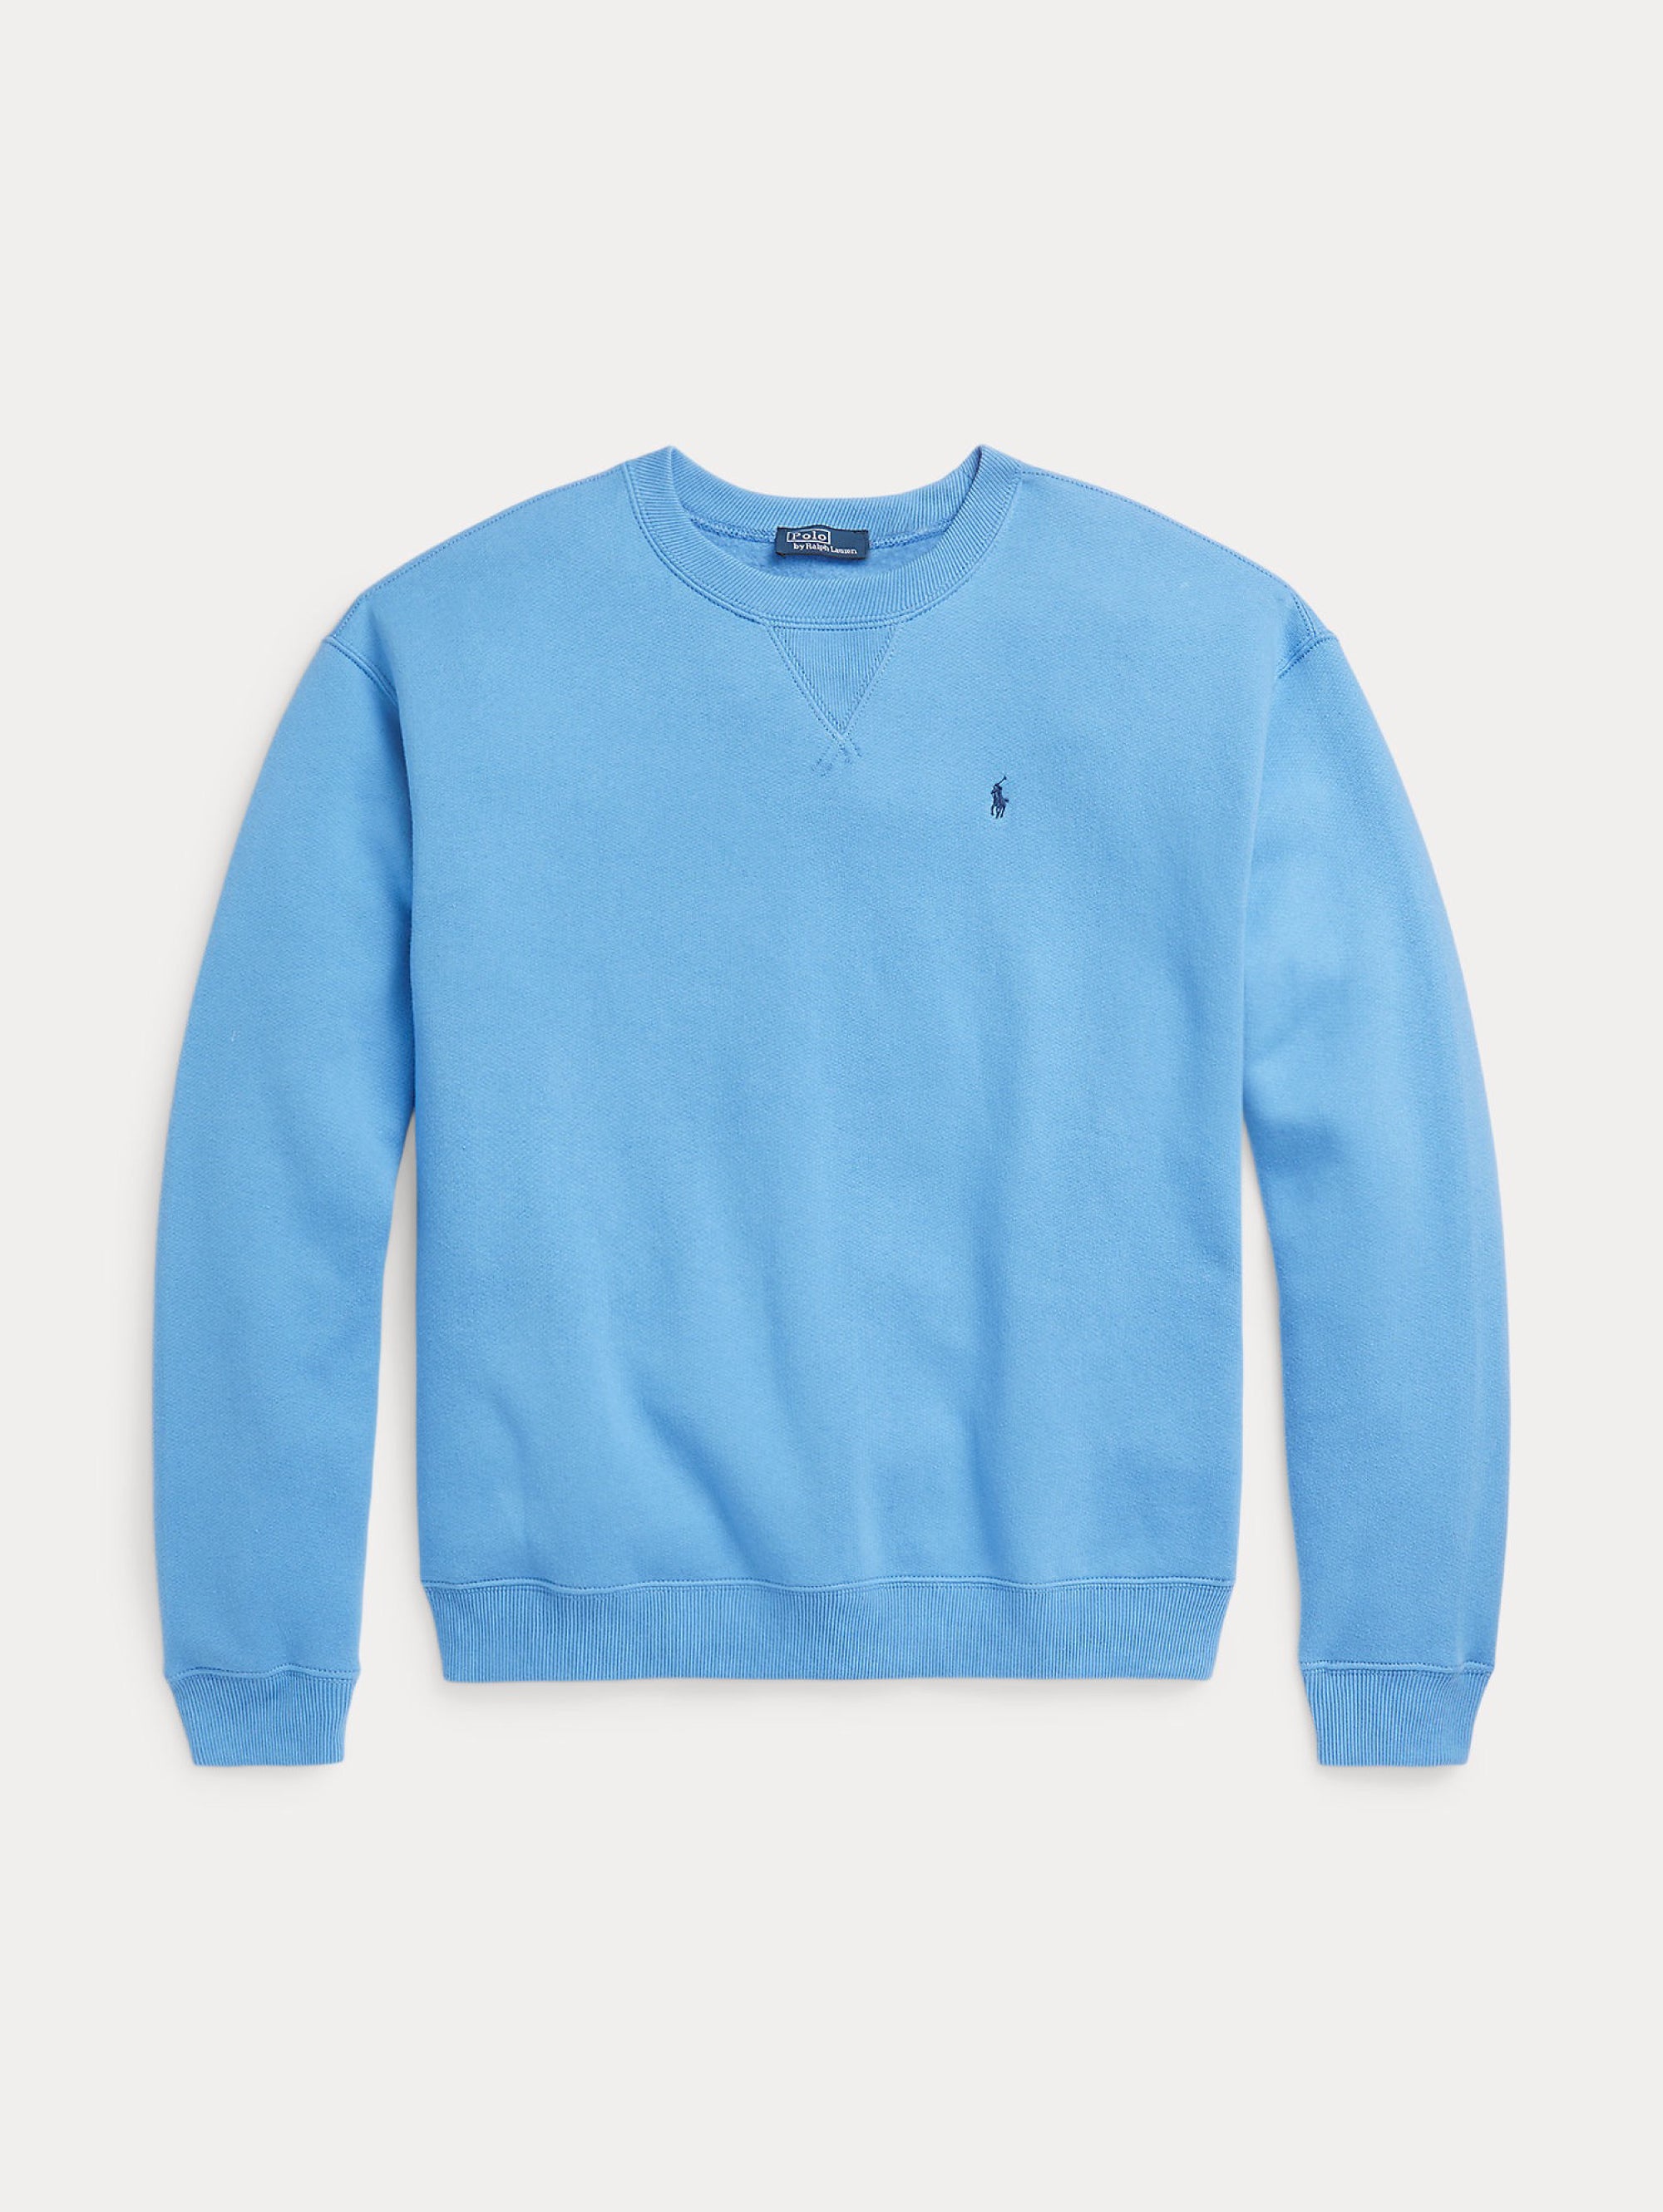 Blaues Rundhals-Sweatshirt mit entspannter Passform